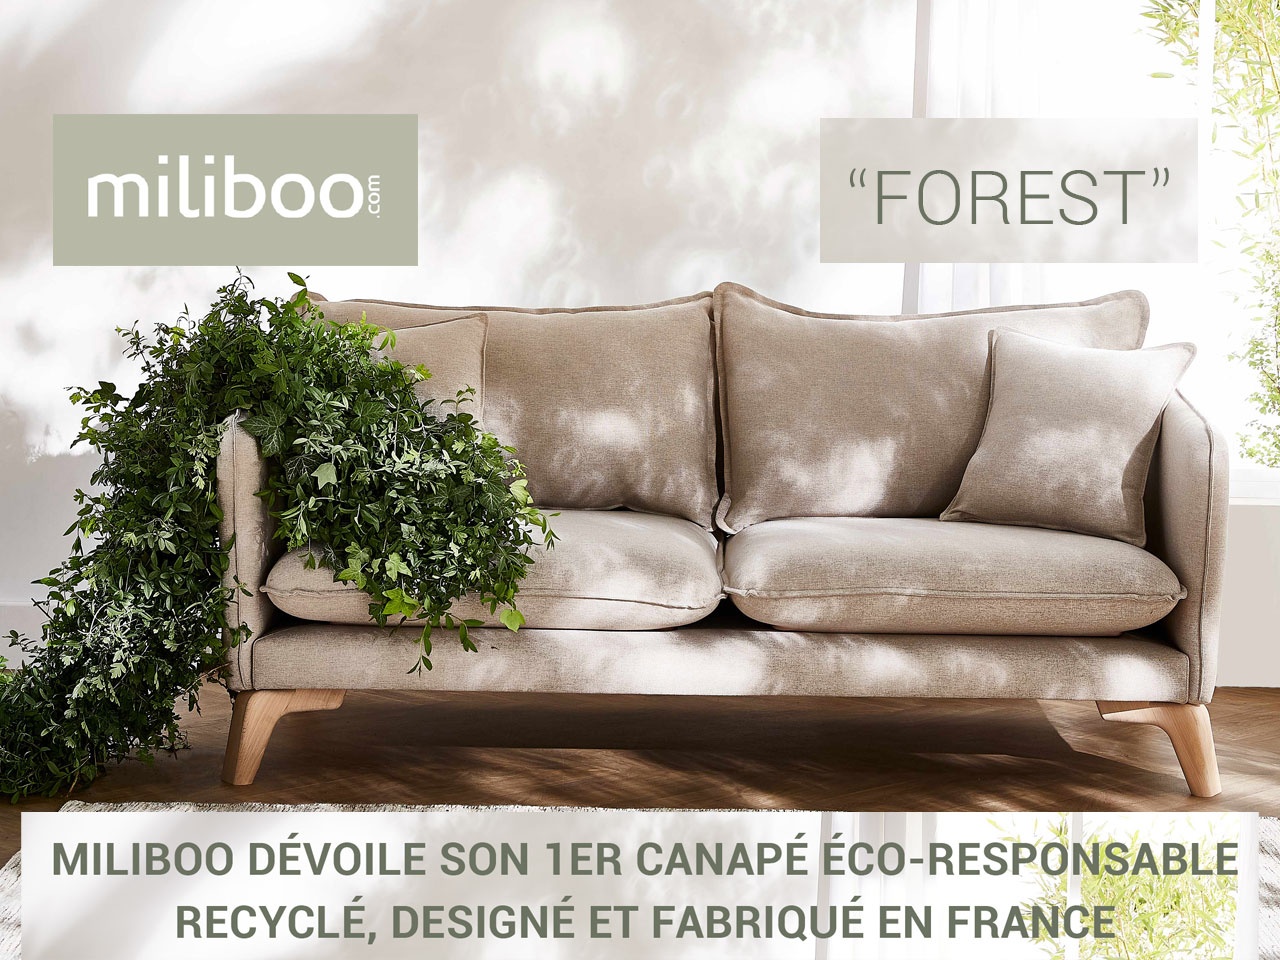 MILIBOO DÉVOILE “FOREST”, SON 1ER CANAPÉ ÉCO-RESPONSABLE RECYCLÉ, DESIGNÉ ET FABRIQUÉ EN FRANCE